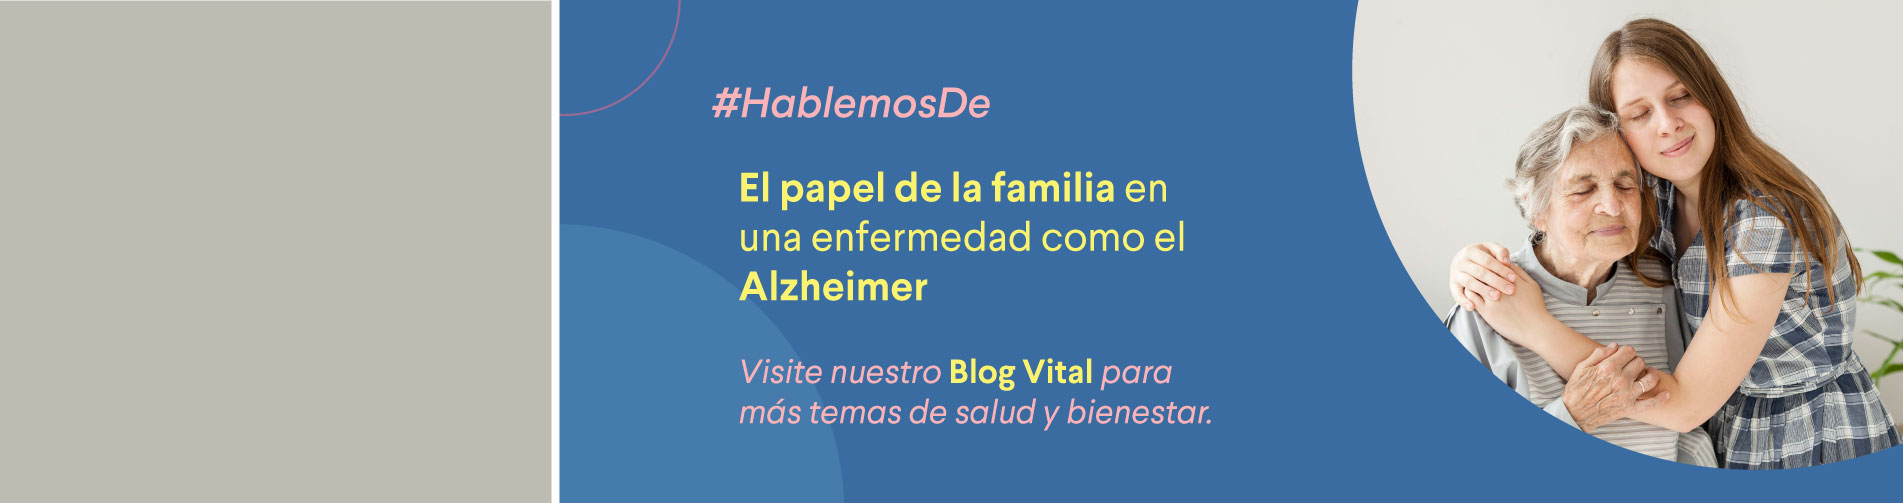 banner home blog shaio: El papel de la familia en una enfermedad como el Alzheimer